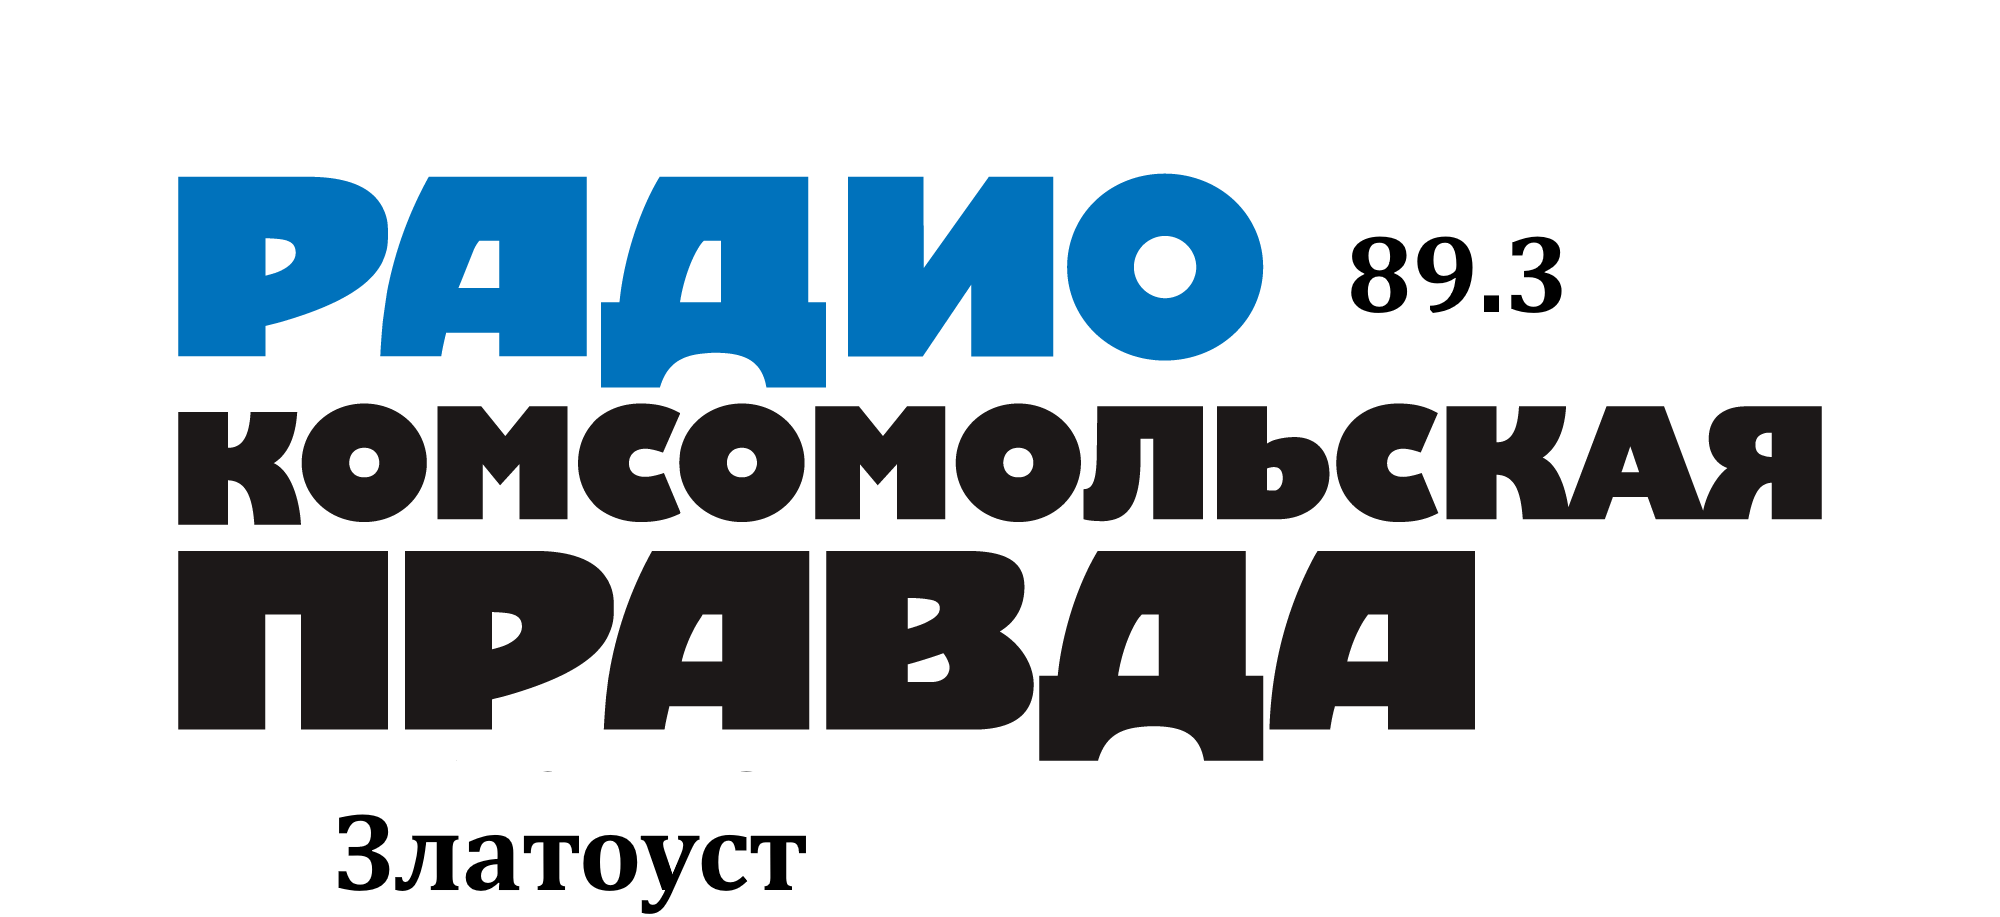 Раземщение рекламы Комсомольская правда 89.3 FM, г. Златоуст